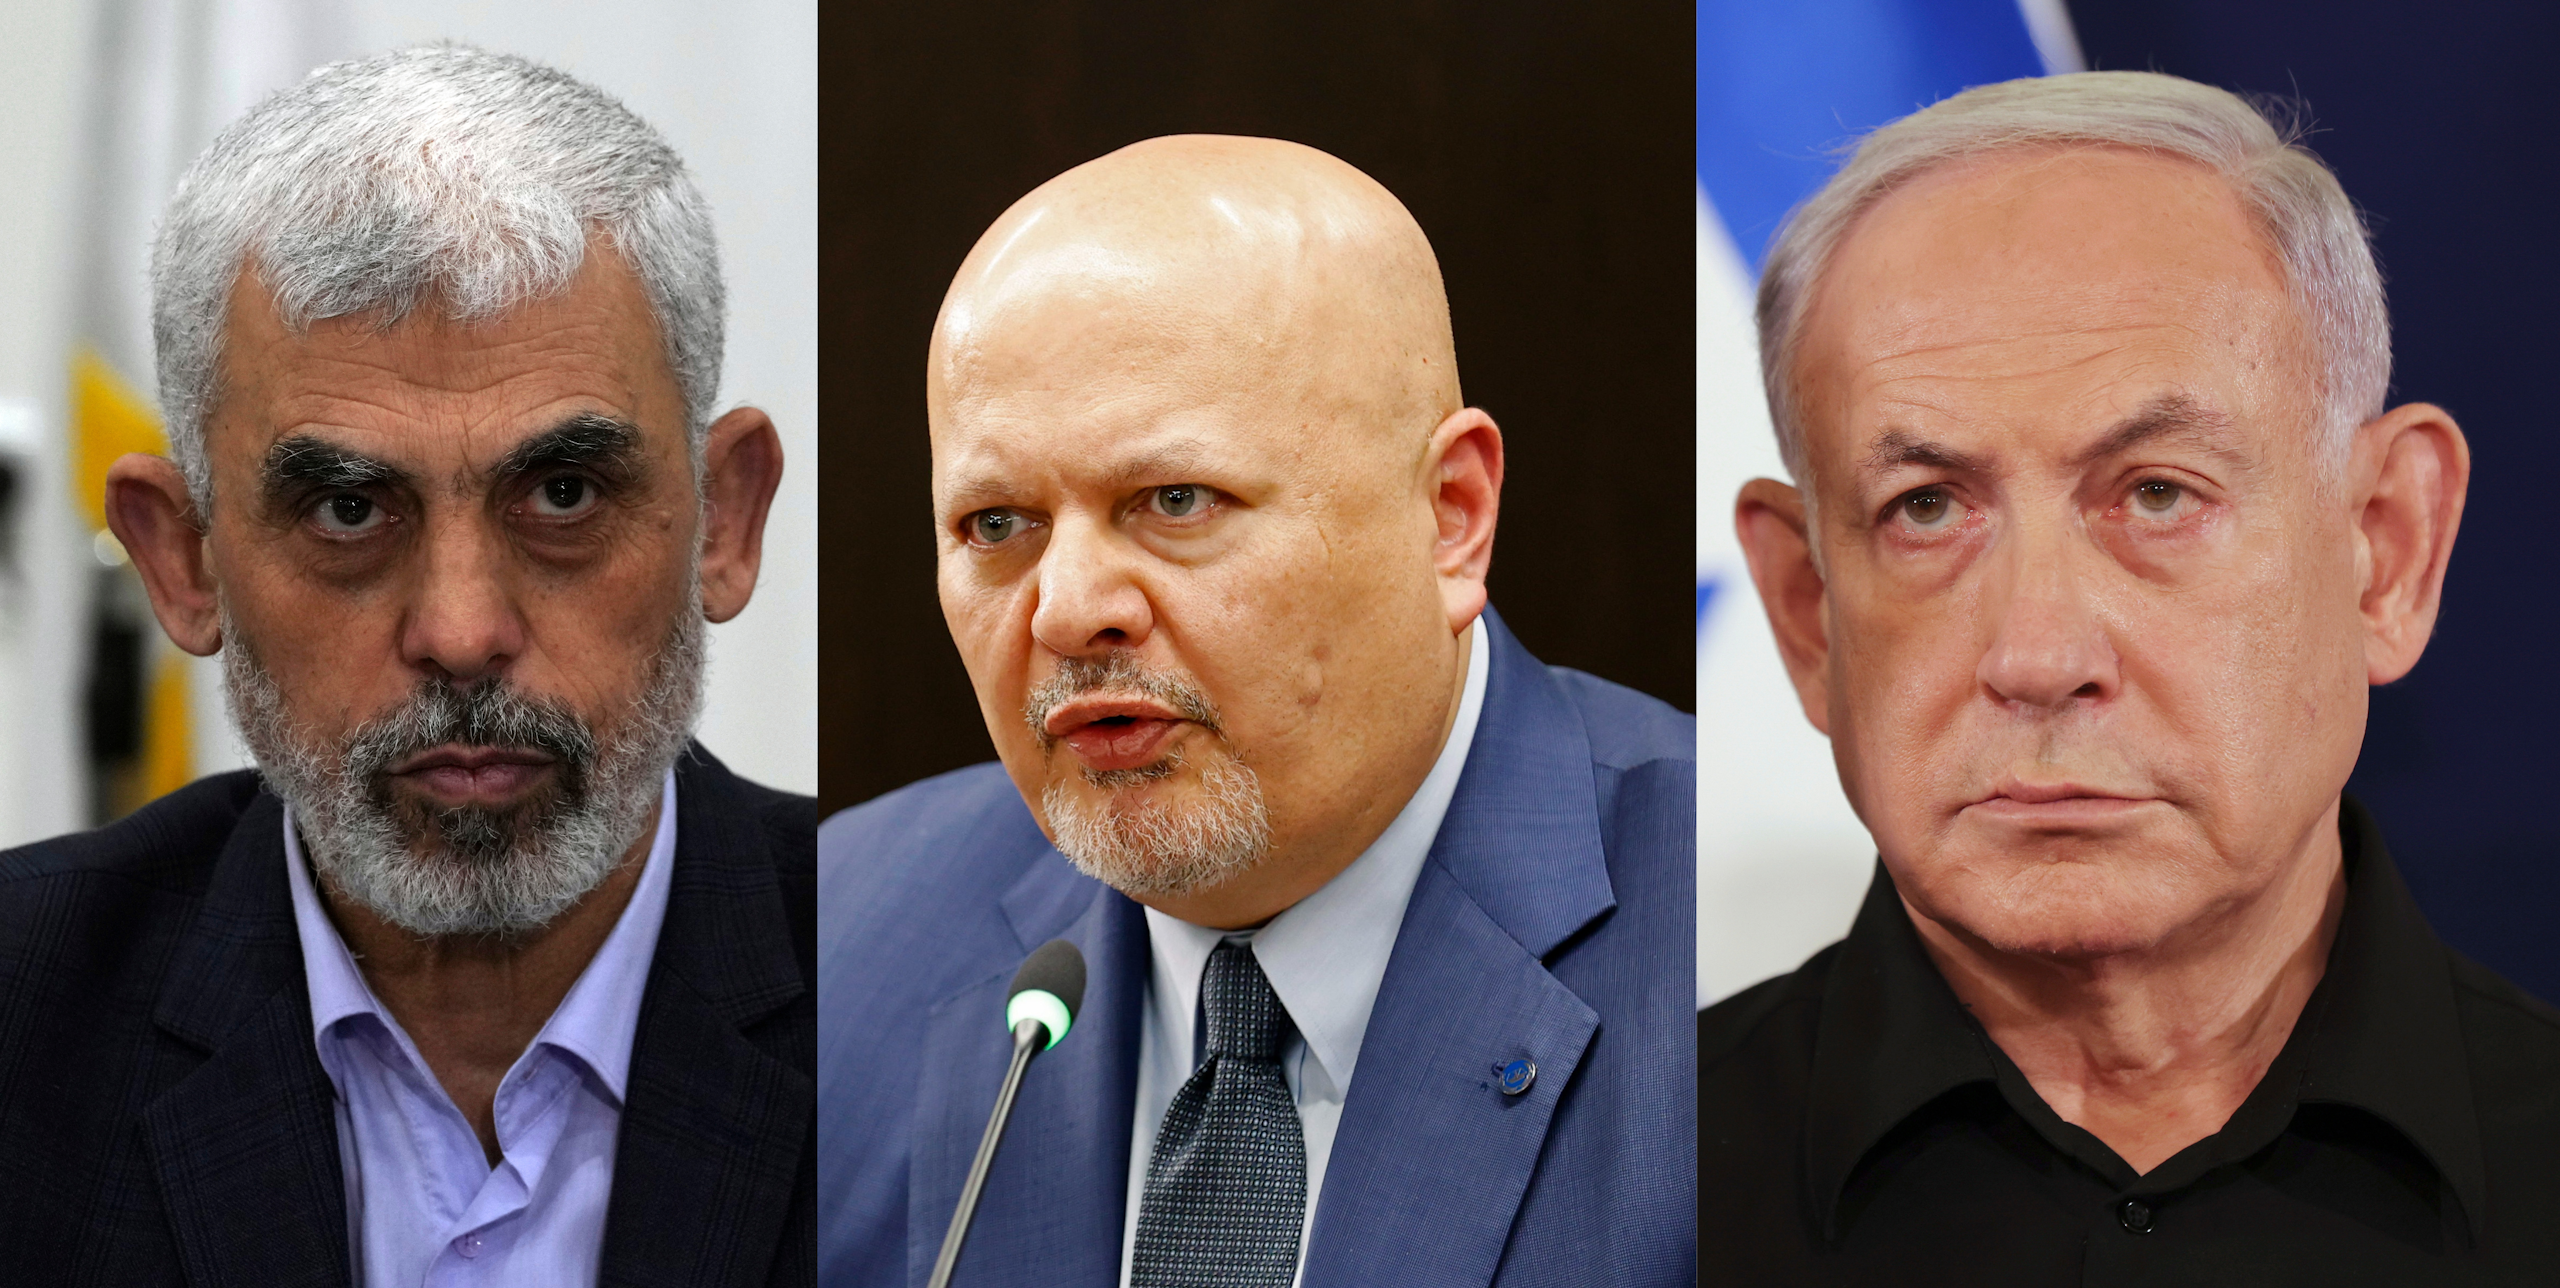 Las órdenes de detención de Netanyahu y los líderes de Hamás ponen a prueba los límites de la justicia internacional